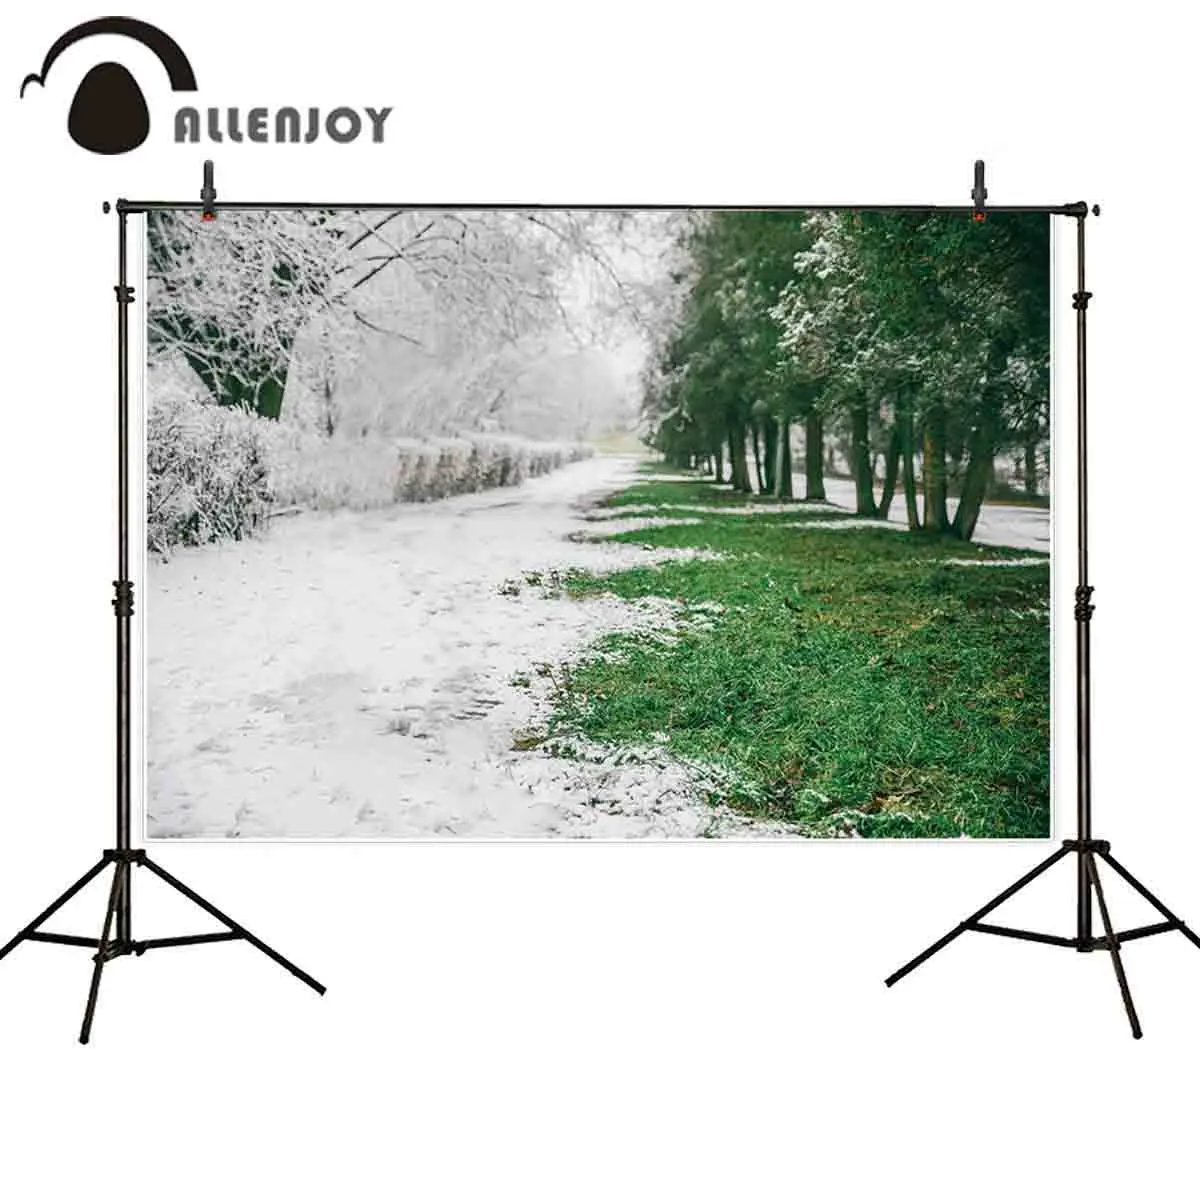 Allenjoy фон для фотосъемки с ранней весной изображением таяния снега травы дерева